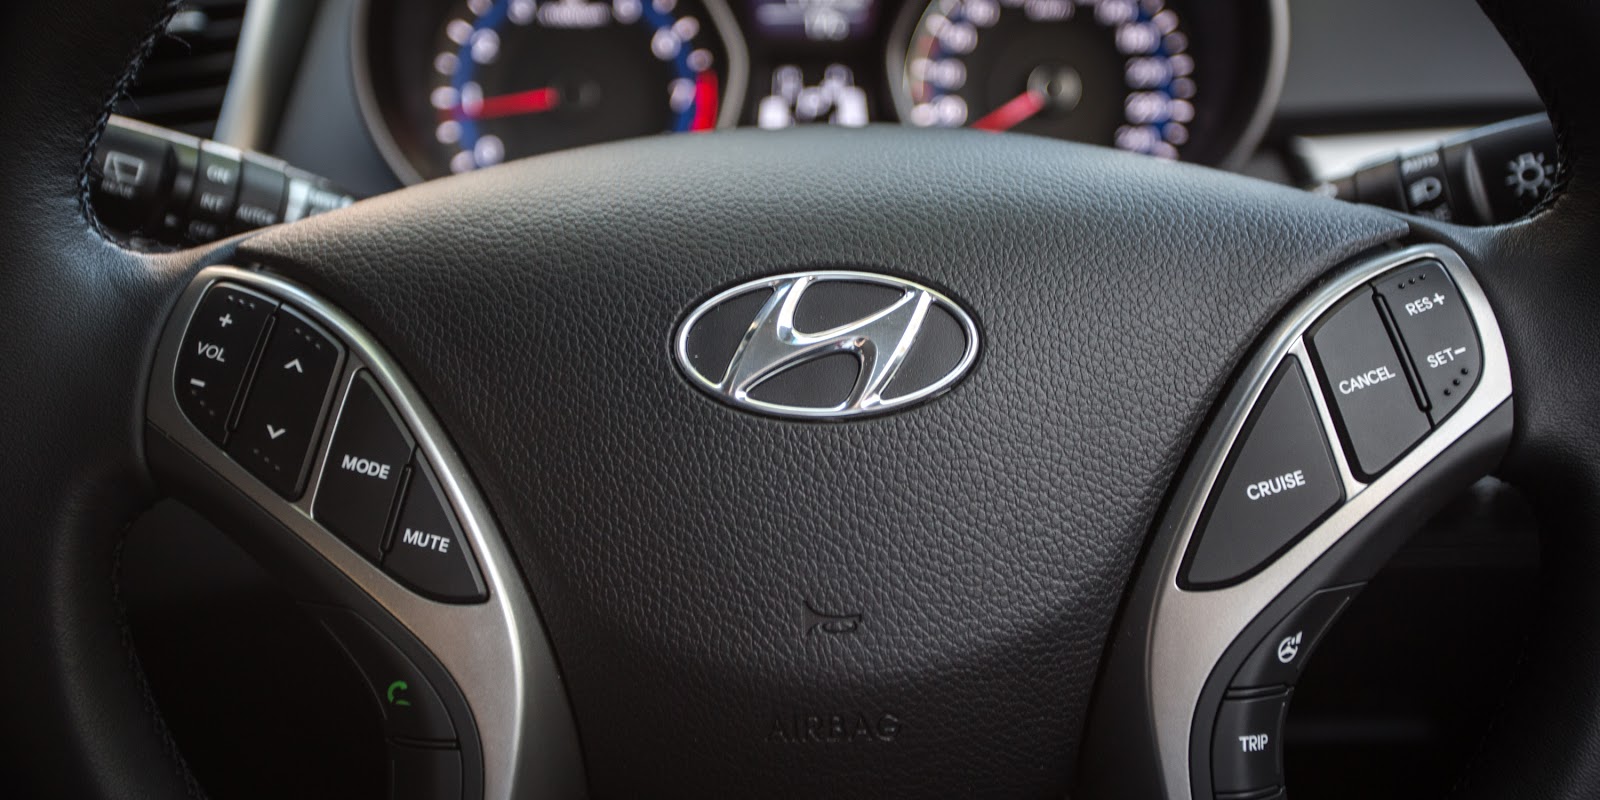 Đánh giá xe Hyundai i30 2016